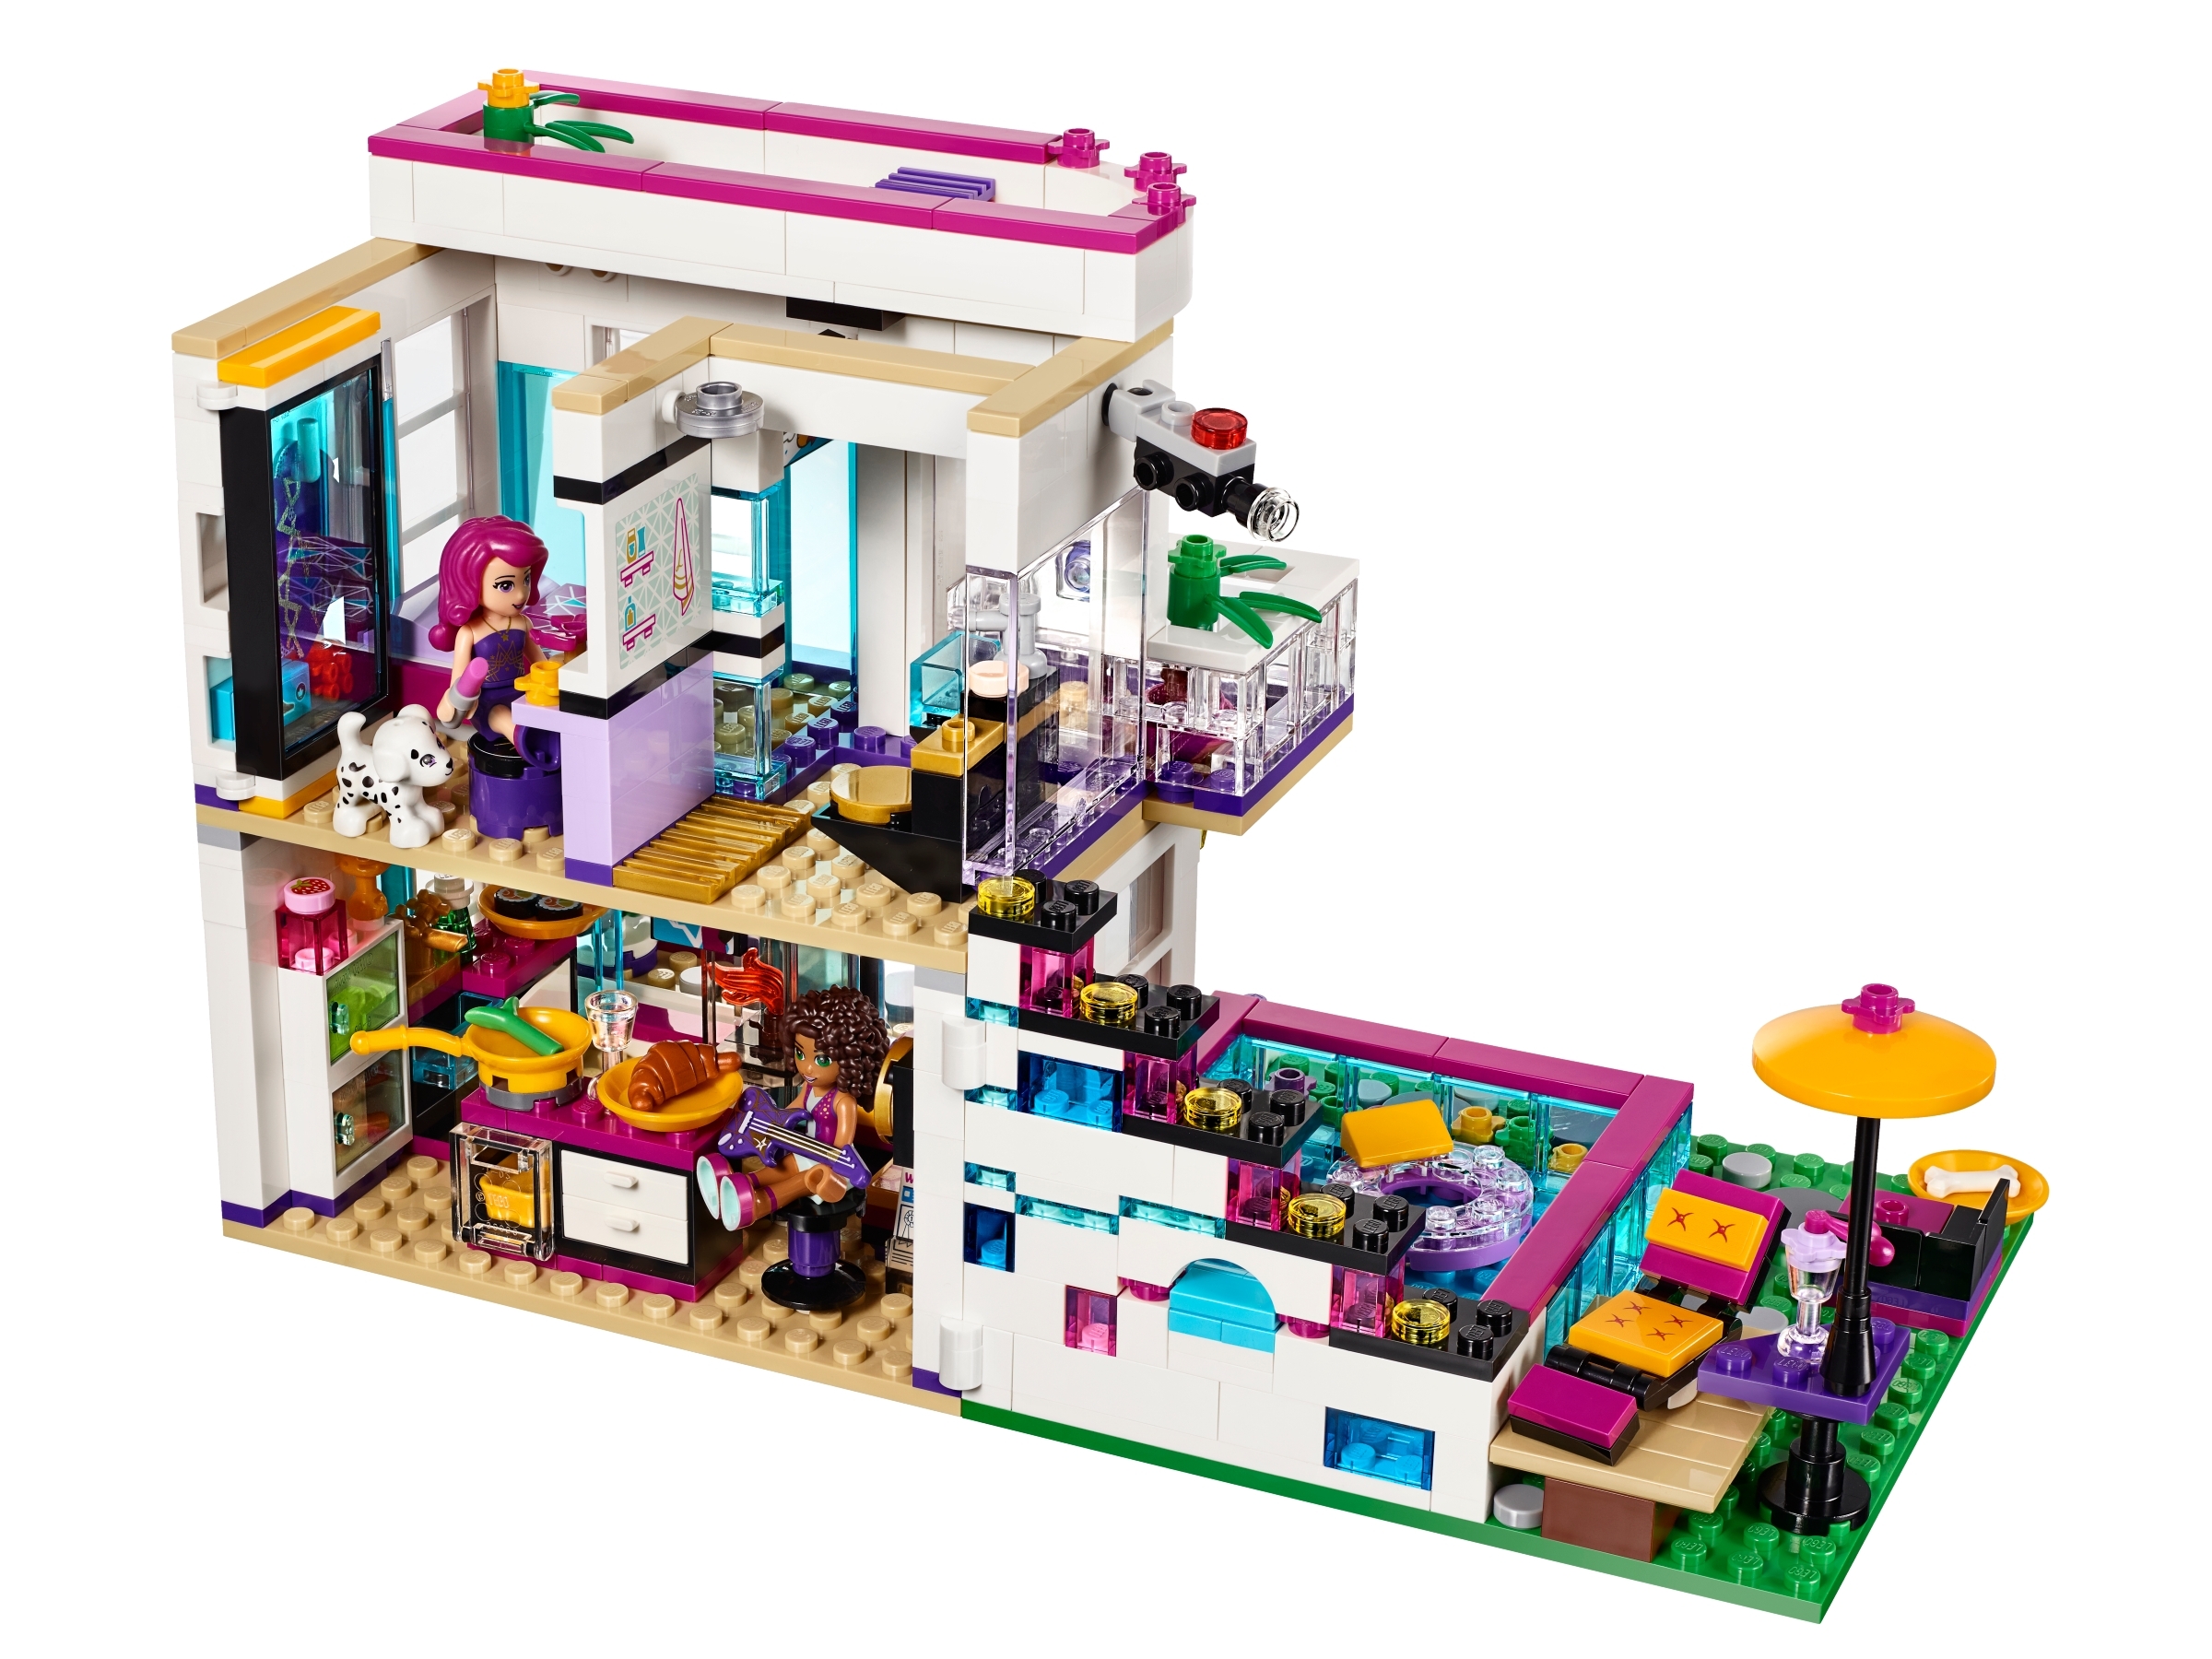 Details about  / Lego Friends Pop Star Lot Livi House Tour Bus 41106 41135 41104 41103 Incomplete